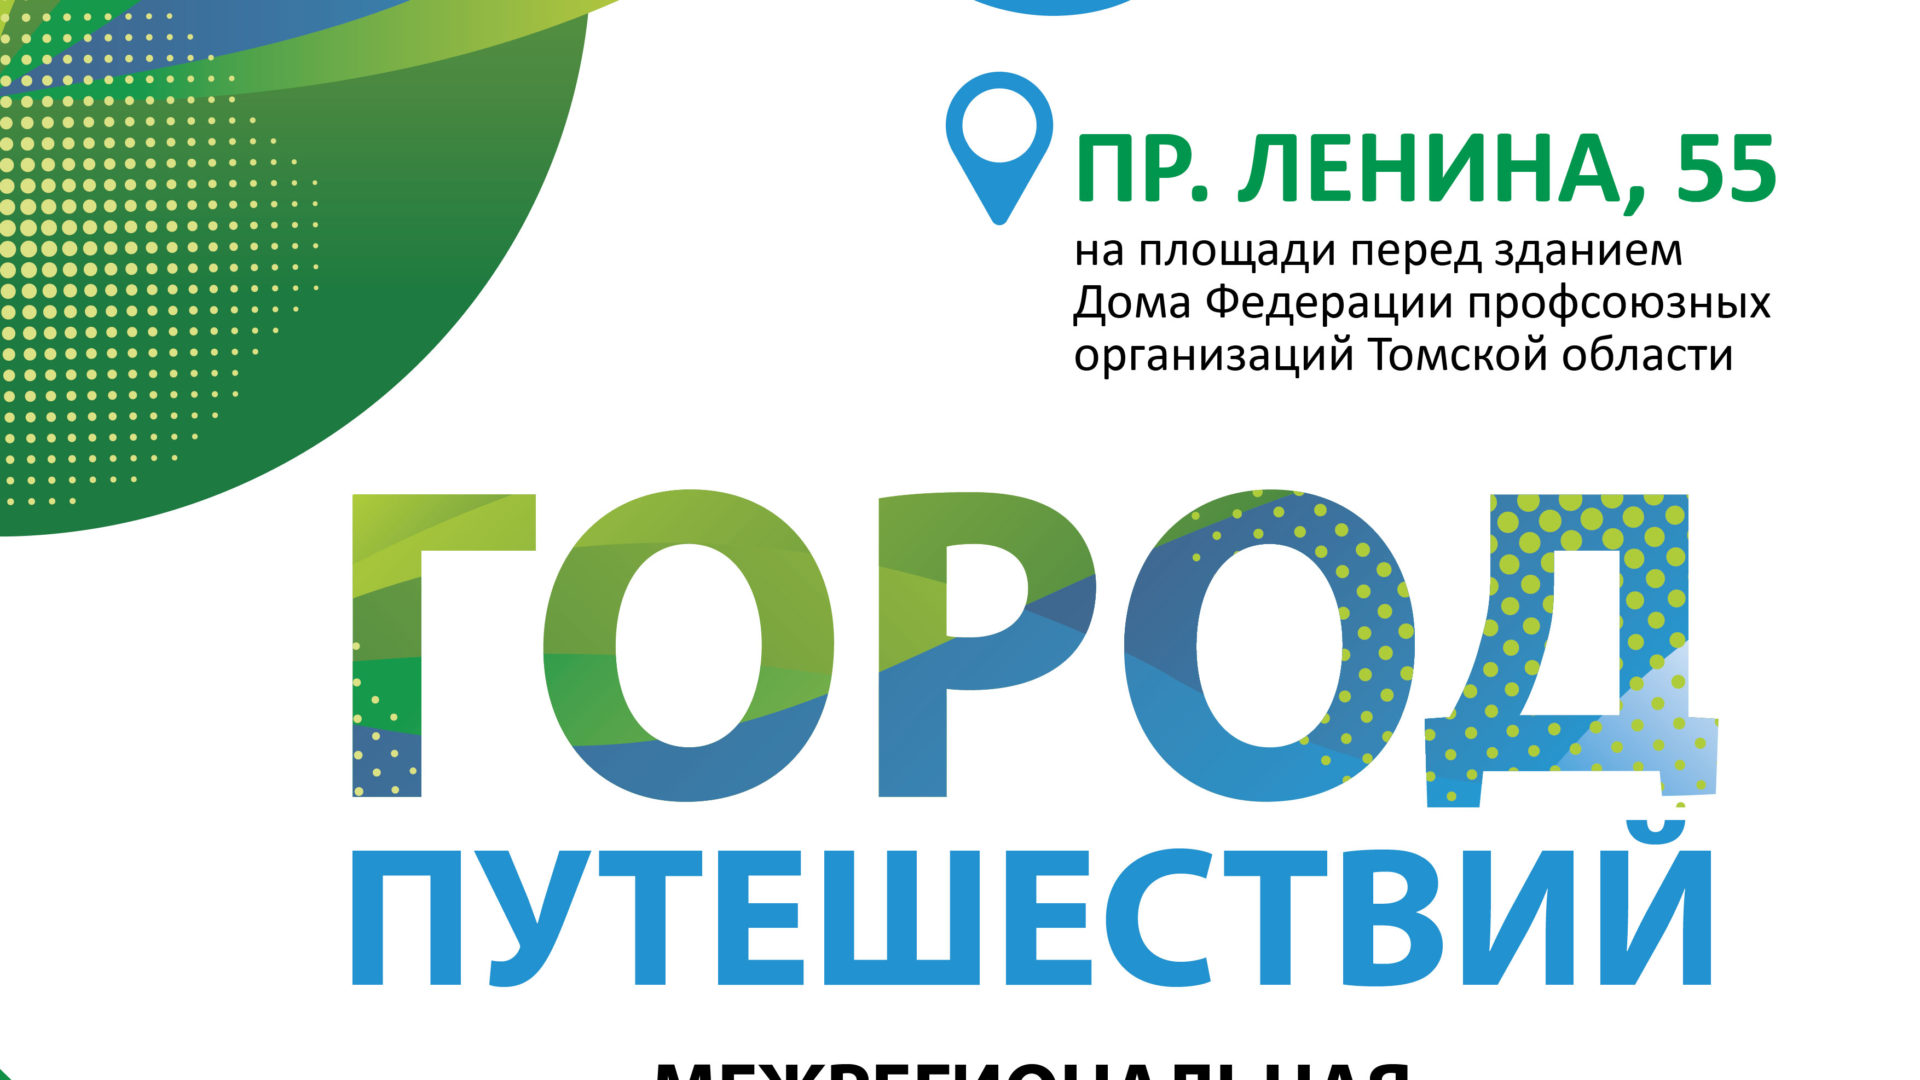 В межрегиональной выставке туристских проектов примут участие организации из Новосибирской области, Алтайского и Красноярского края.